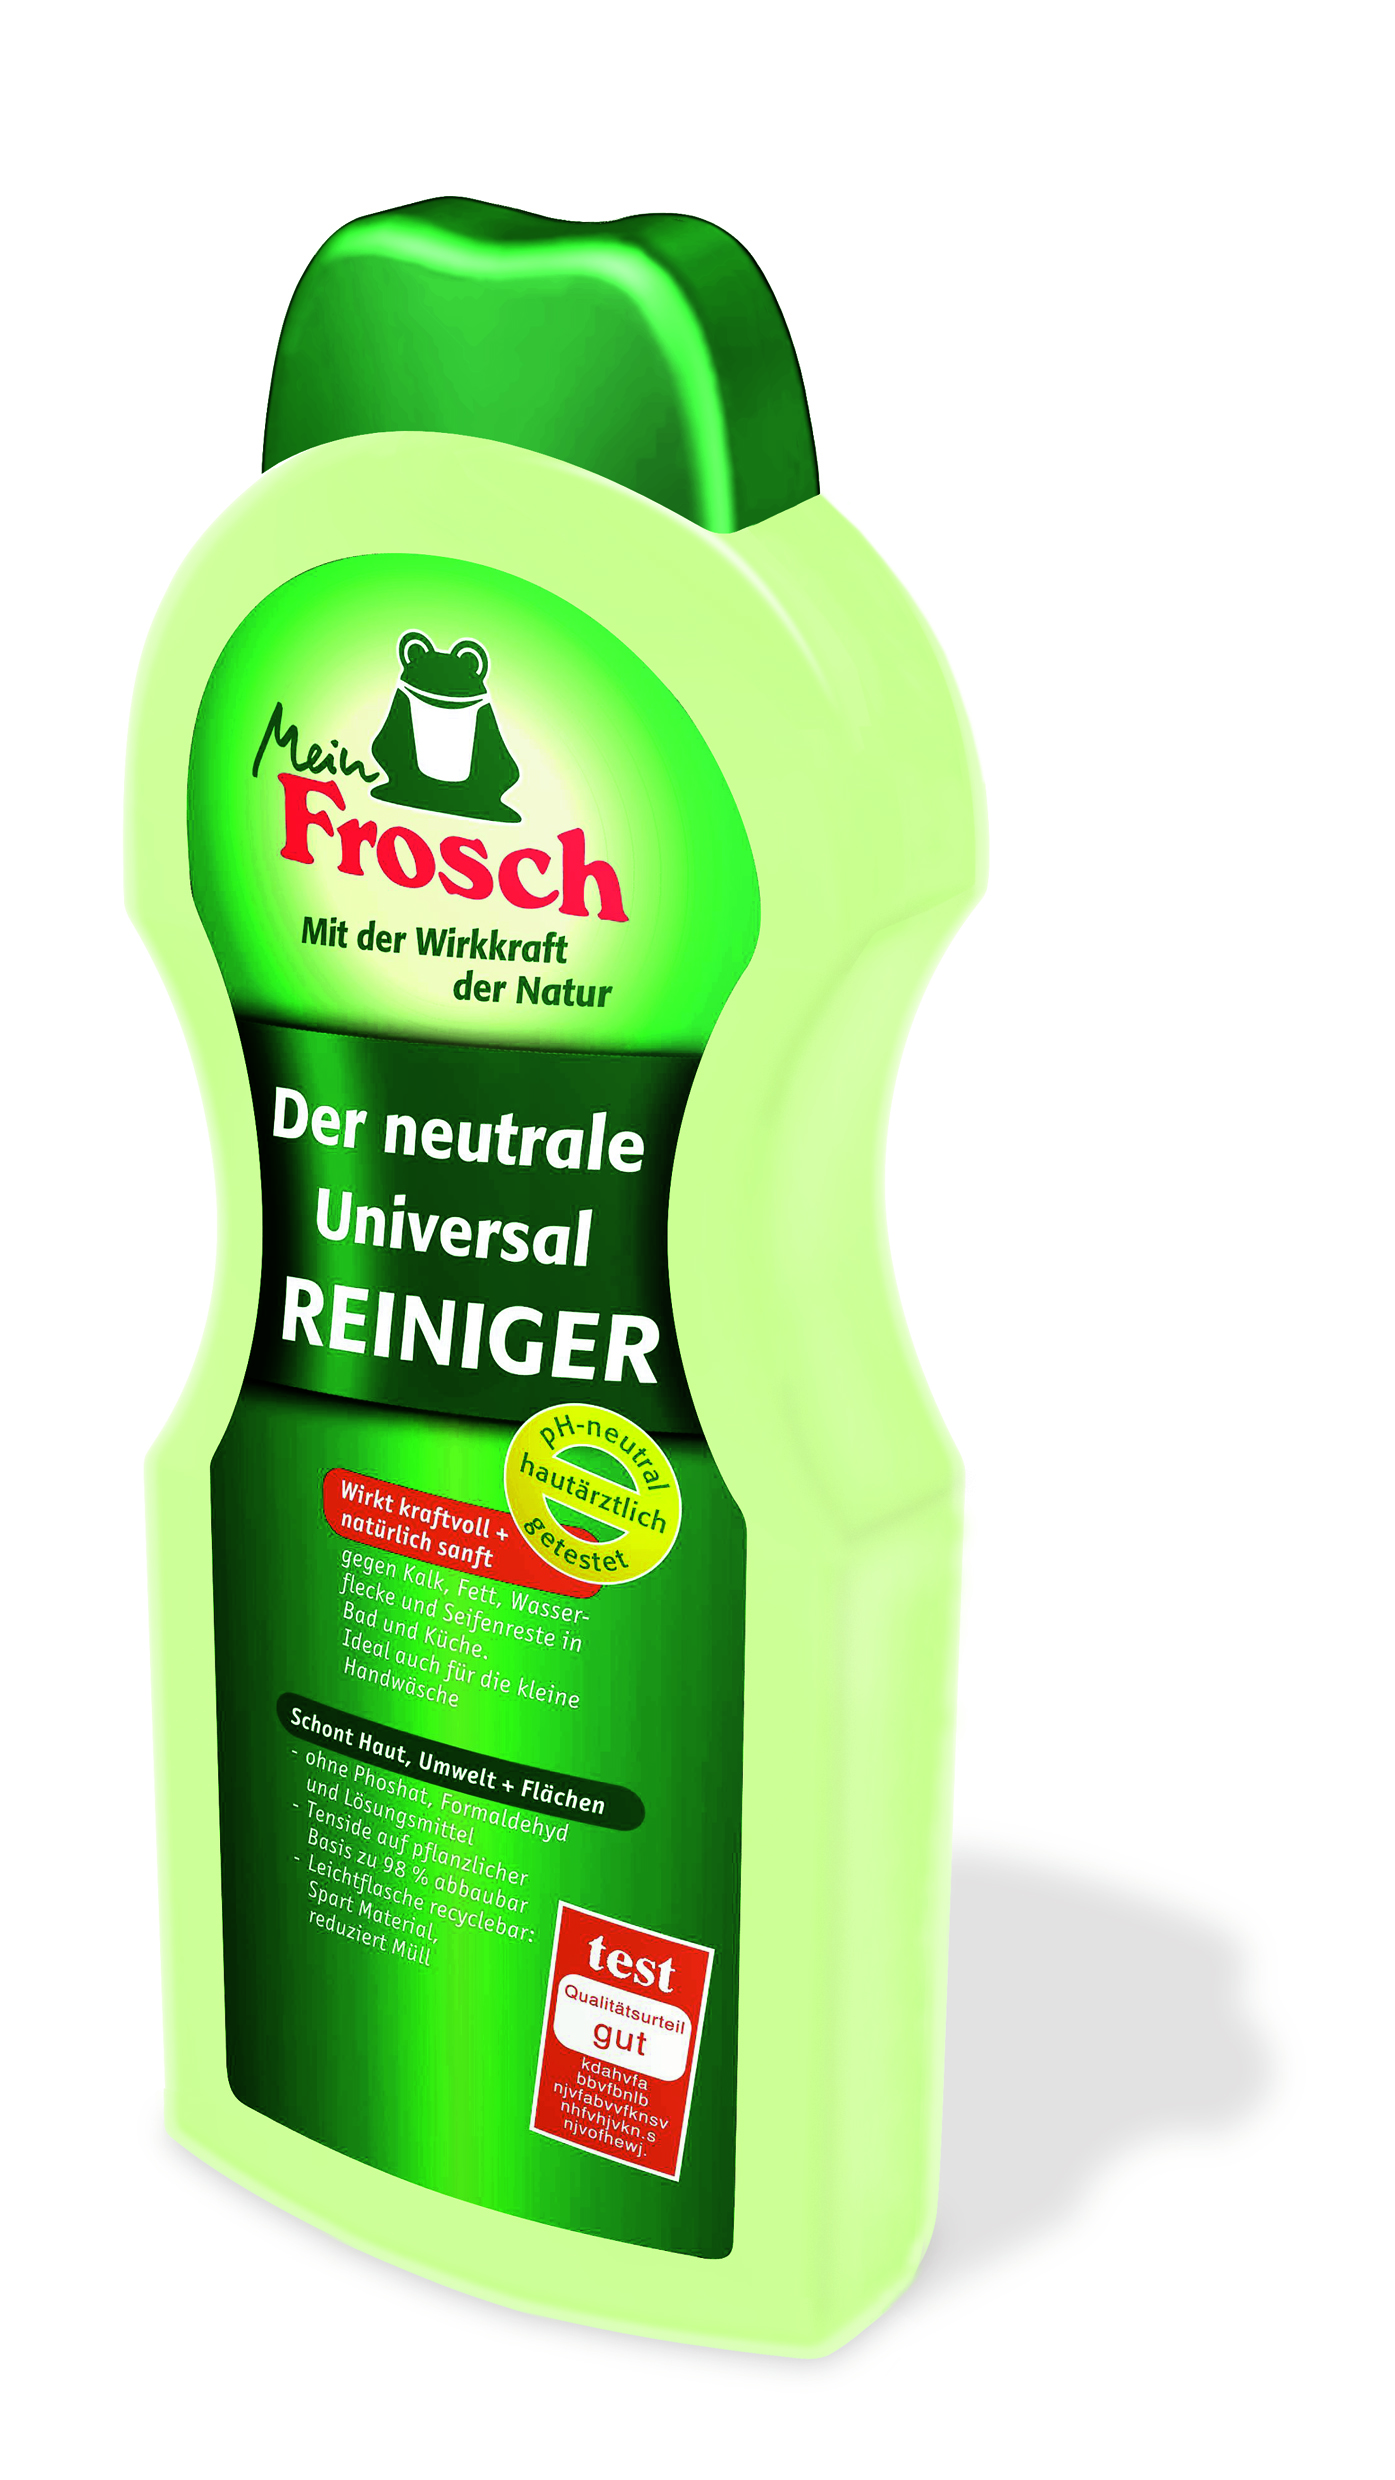 Frosch-Reiniger_Entwurf